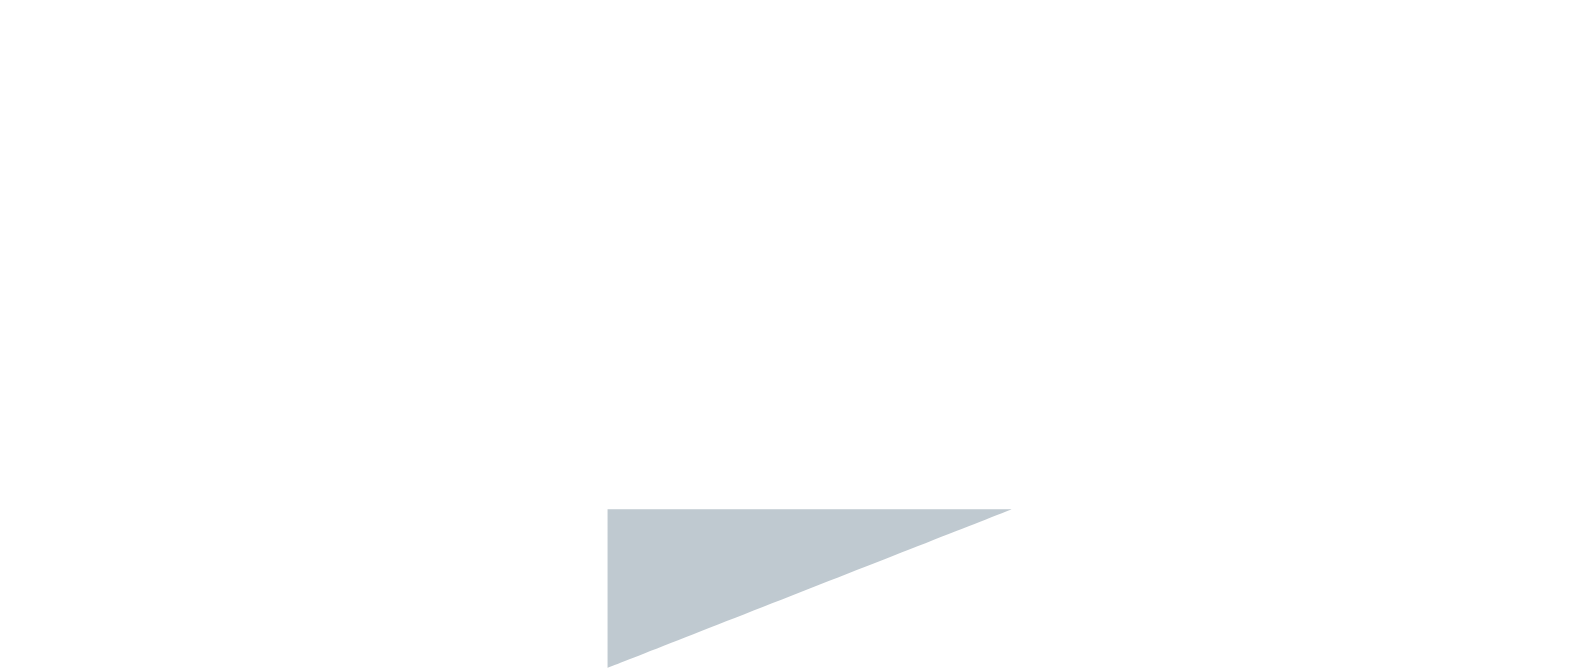 GBL logo for dark backgrounds (transparent PNG)